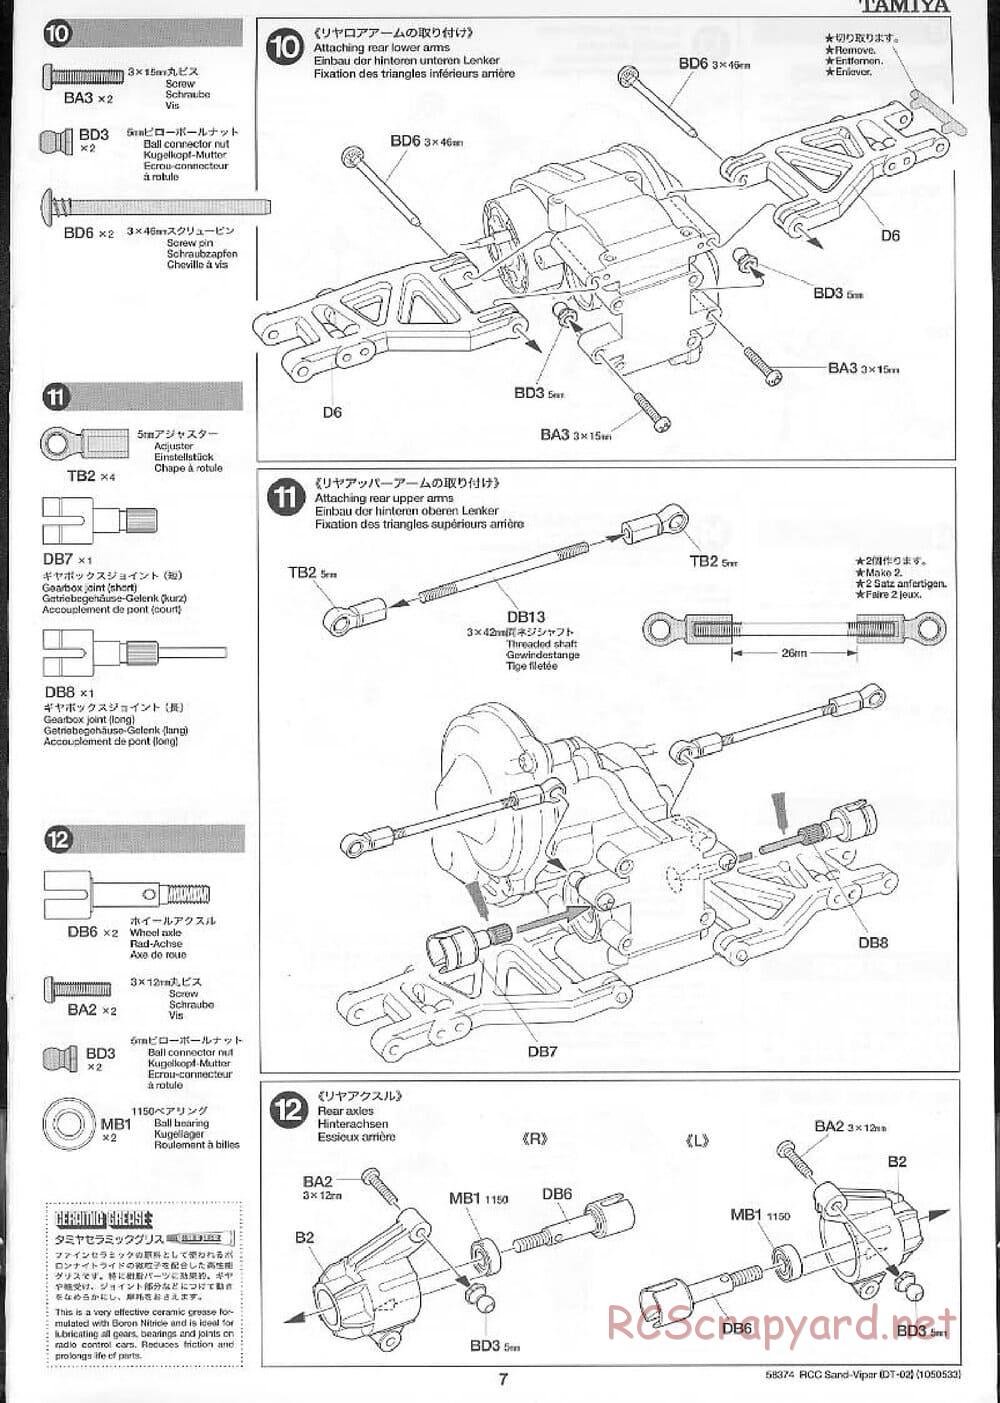 Tamiya - Sand Viper Chassis - Manual - Page 7